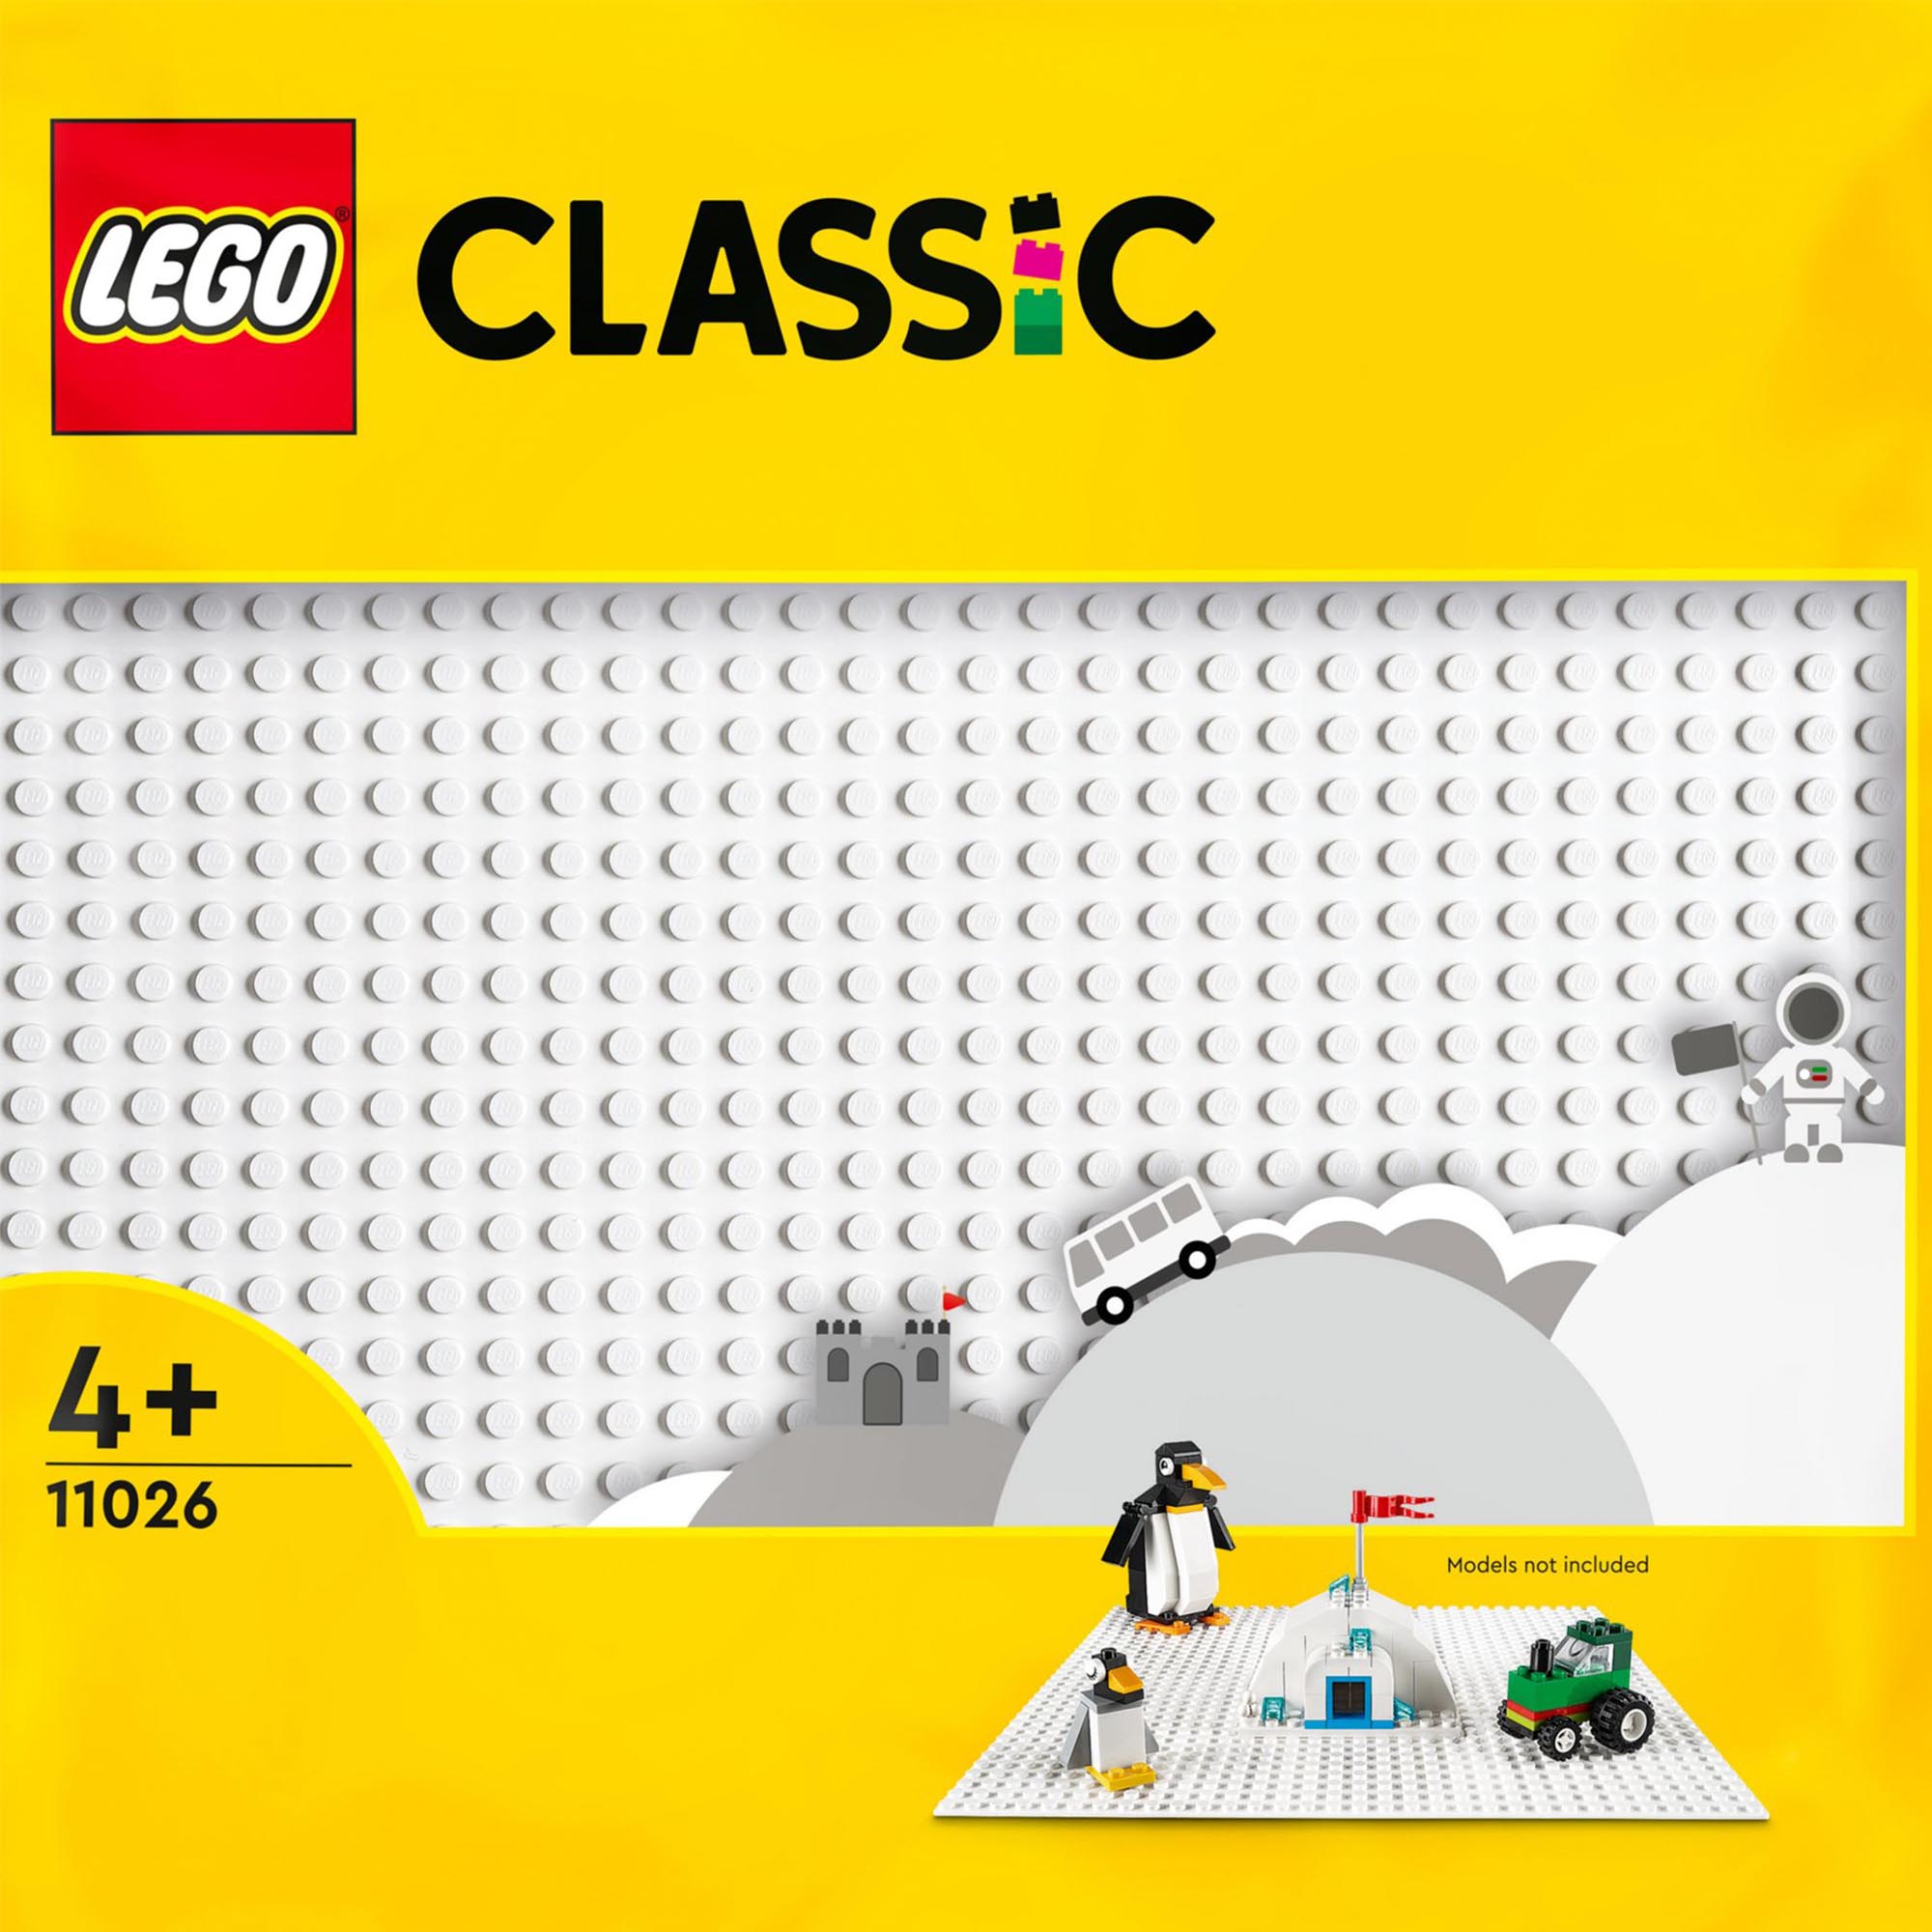 LEGO Classic Base Bianca, Tavola per Costruzioni Quadrata con 32x32 Bottoncini,  11026, , large